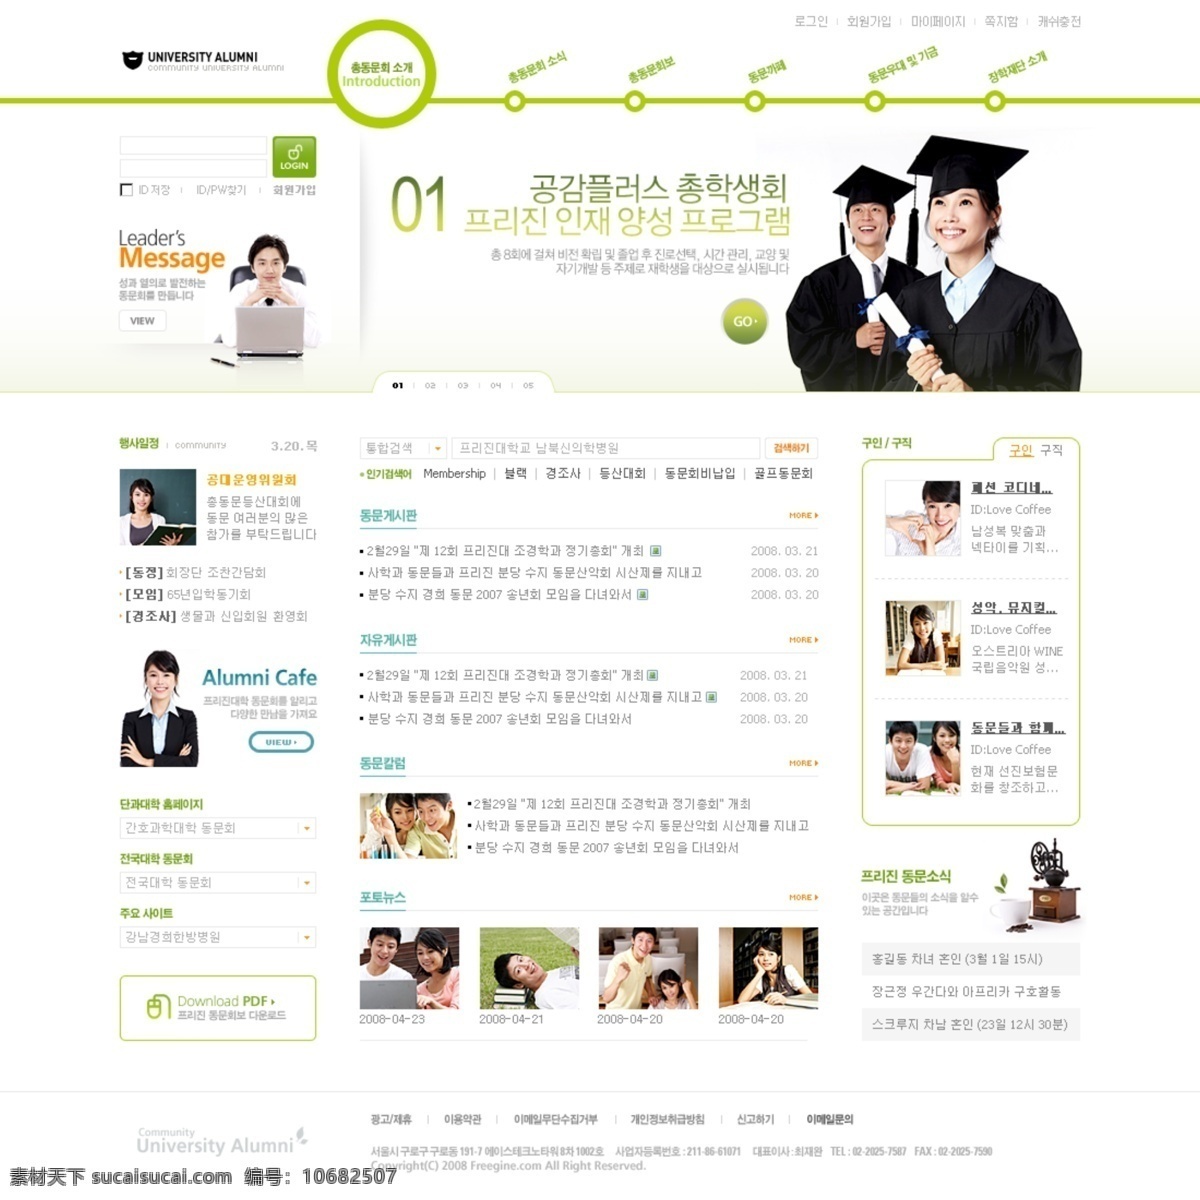 绿色 网页模板 完整 套装 模板下载 模板 绿色网页模板 完整套装 韩国模板 源文件库 白色